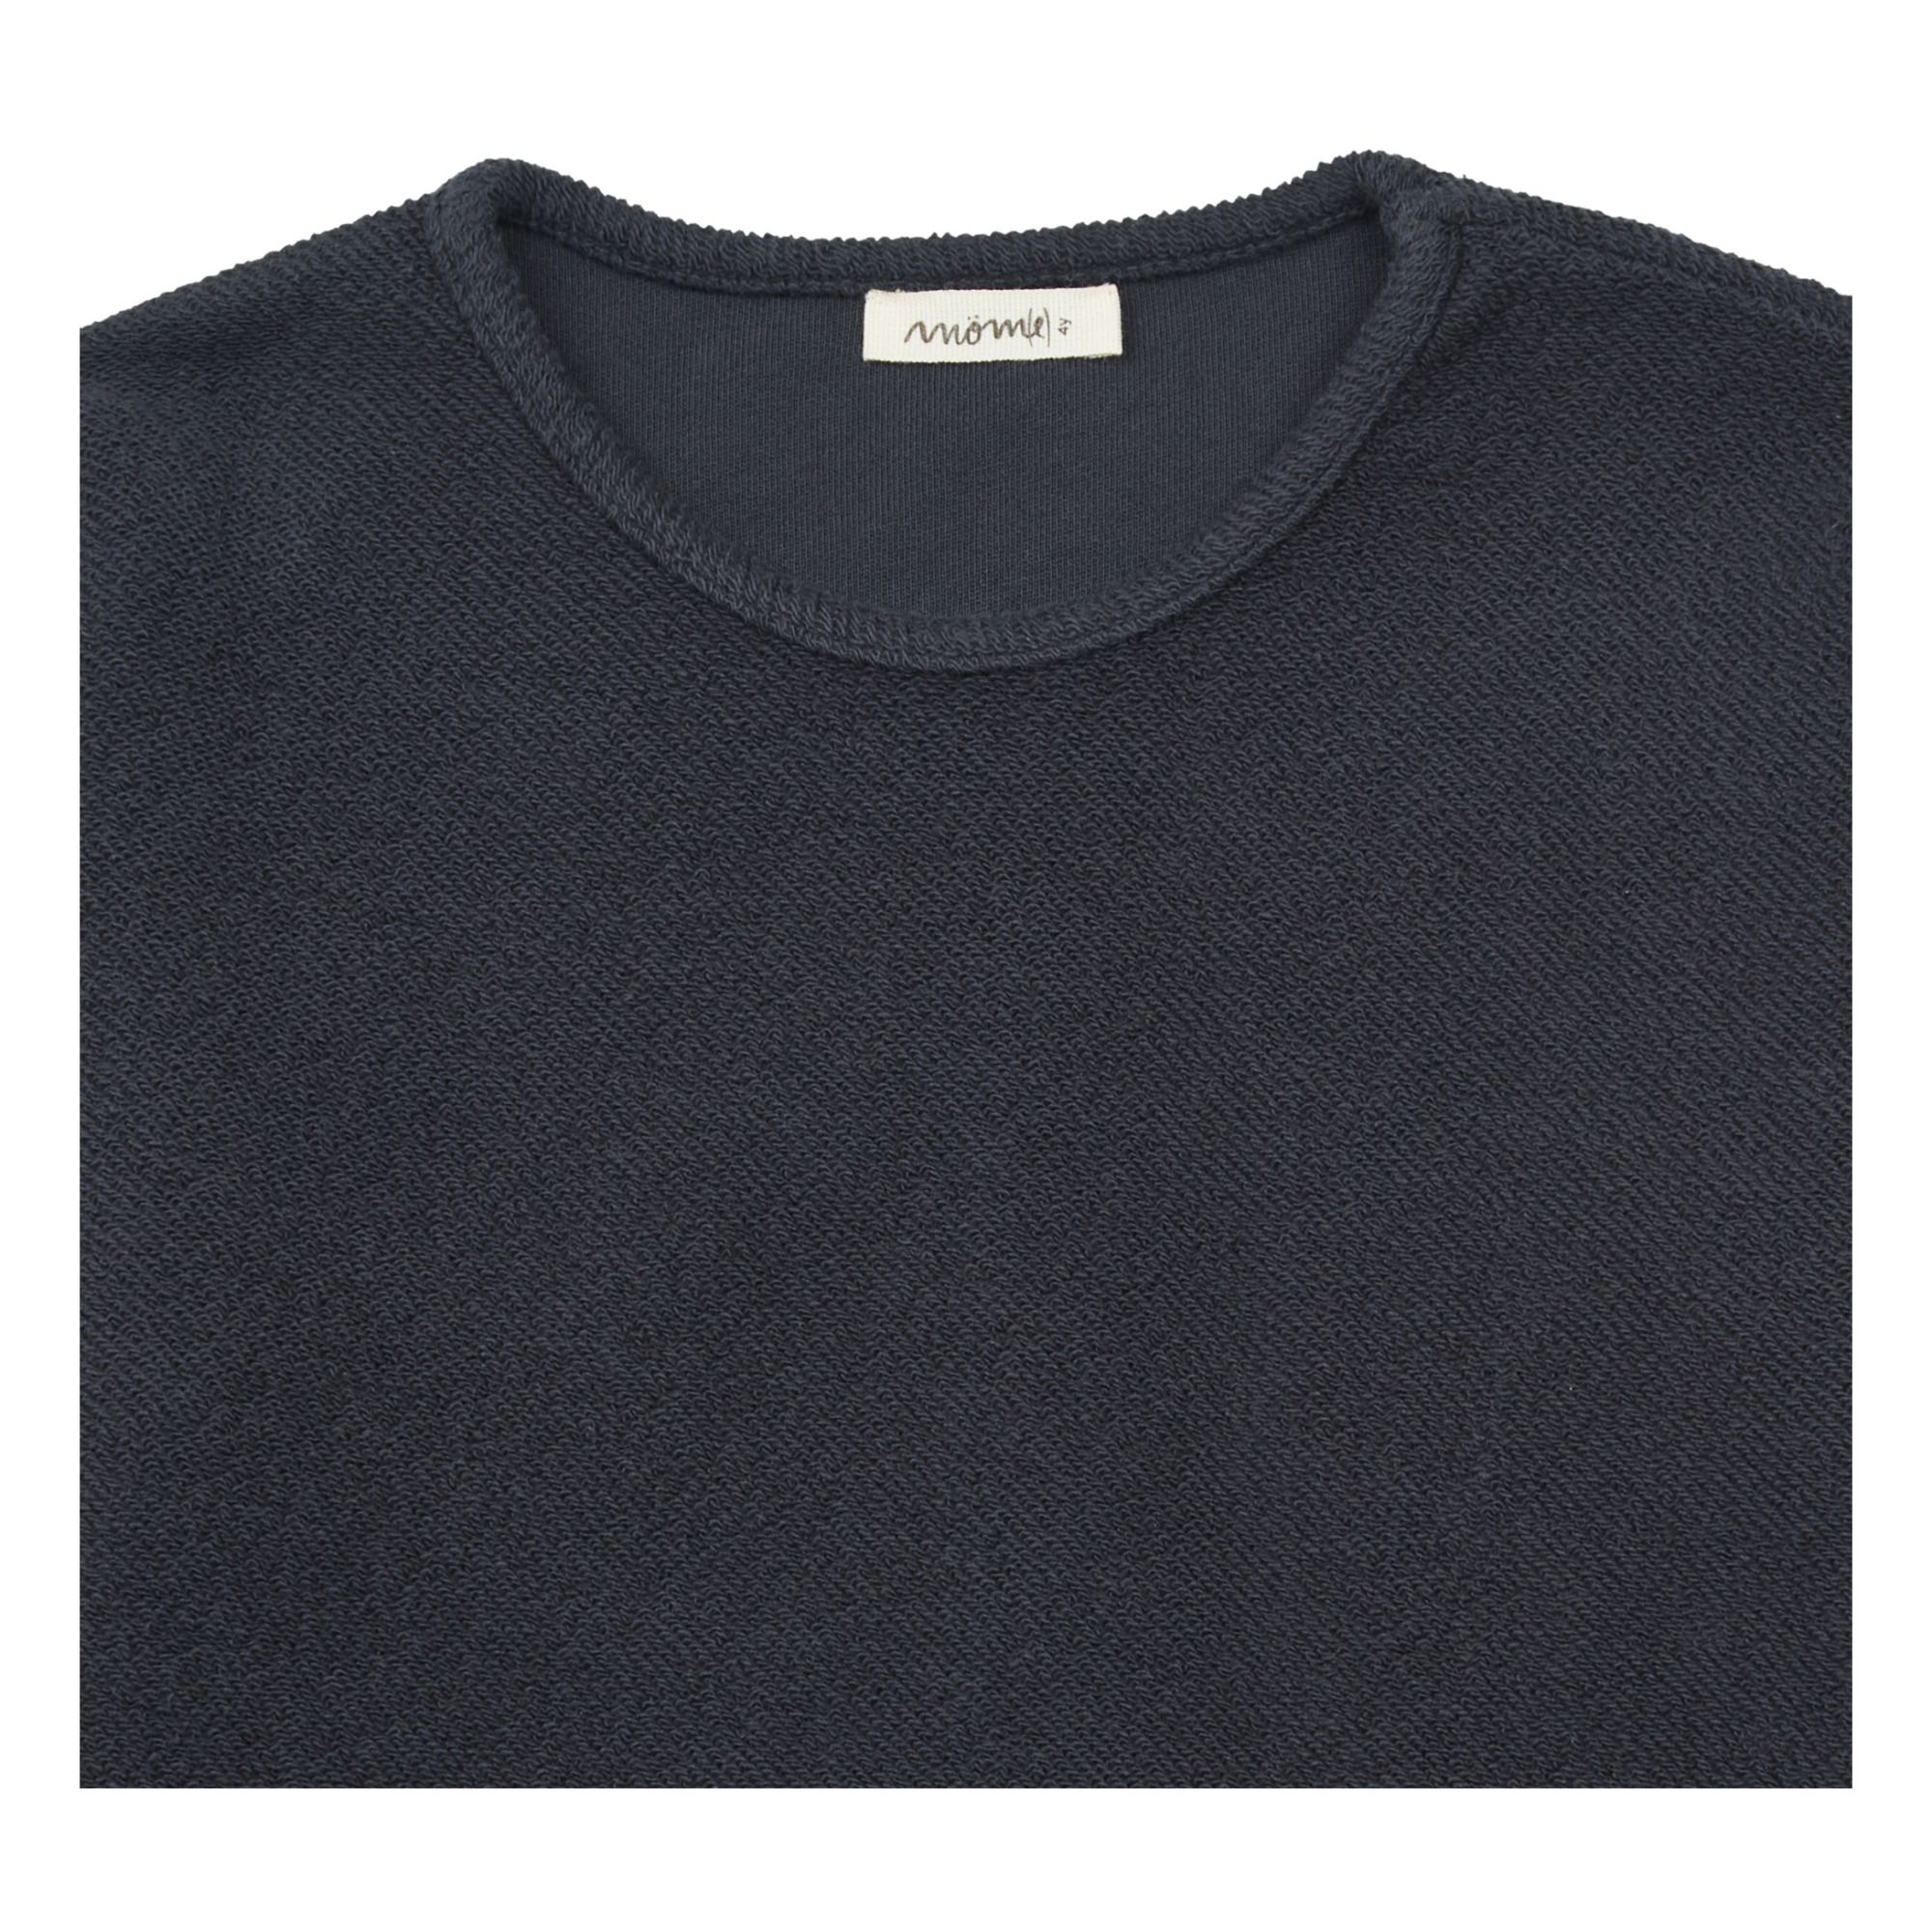 Pedro Organic Cotton Sweatshirt Gris Antracita- Imagen del producto n°1